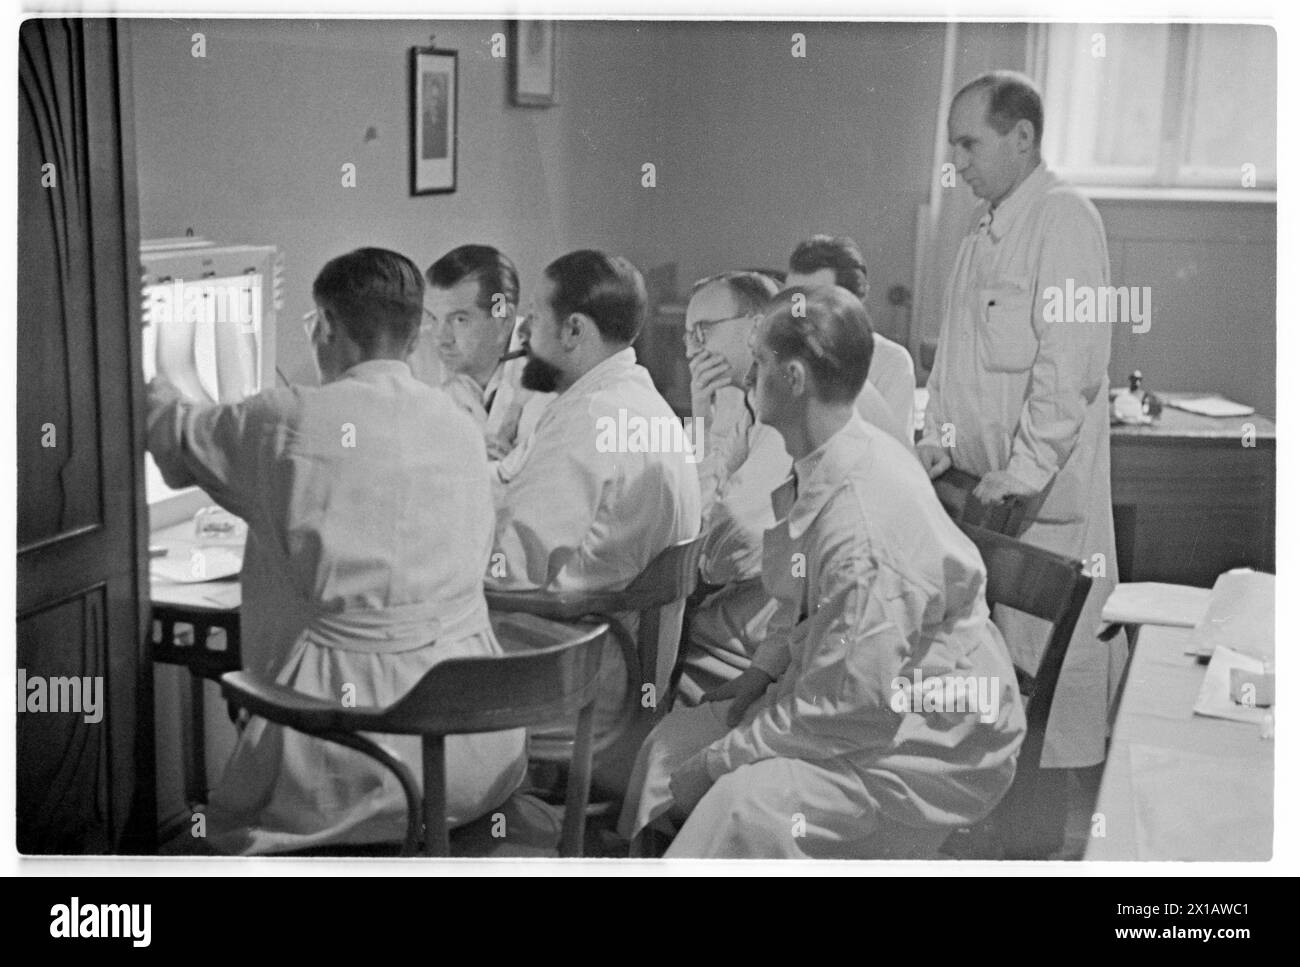 Allgemeinkrankenhaus xla Boerhavegasse (Rudolfspital), Arzt mit Röntgenaufnahme, 1943 - 19430101 PD4288 - Rechteinfo: Rights Managed (RM) Stockfoto